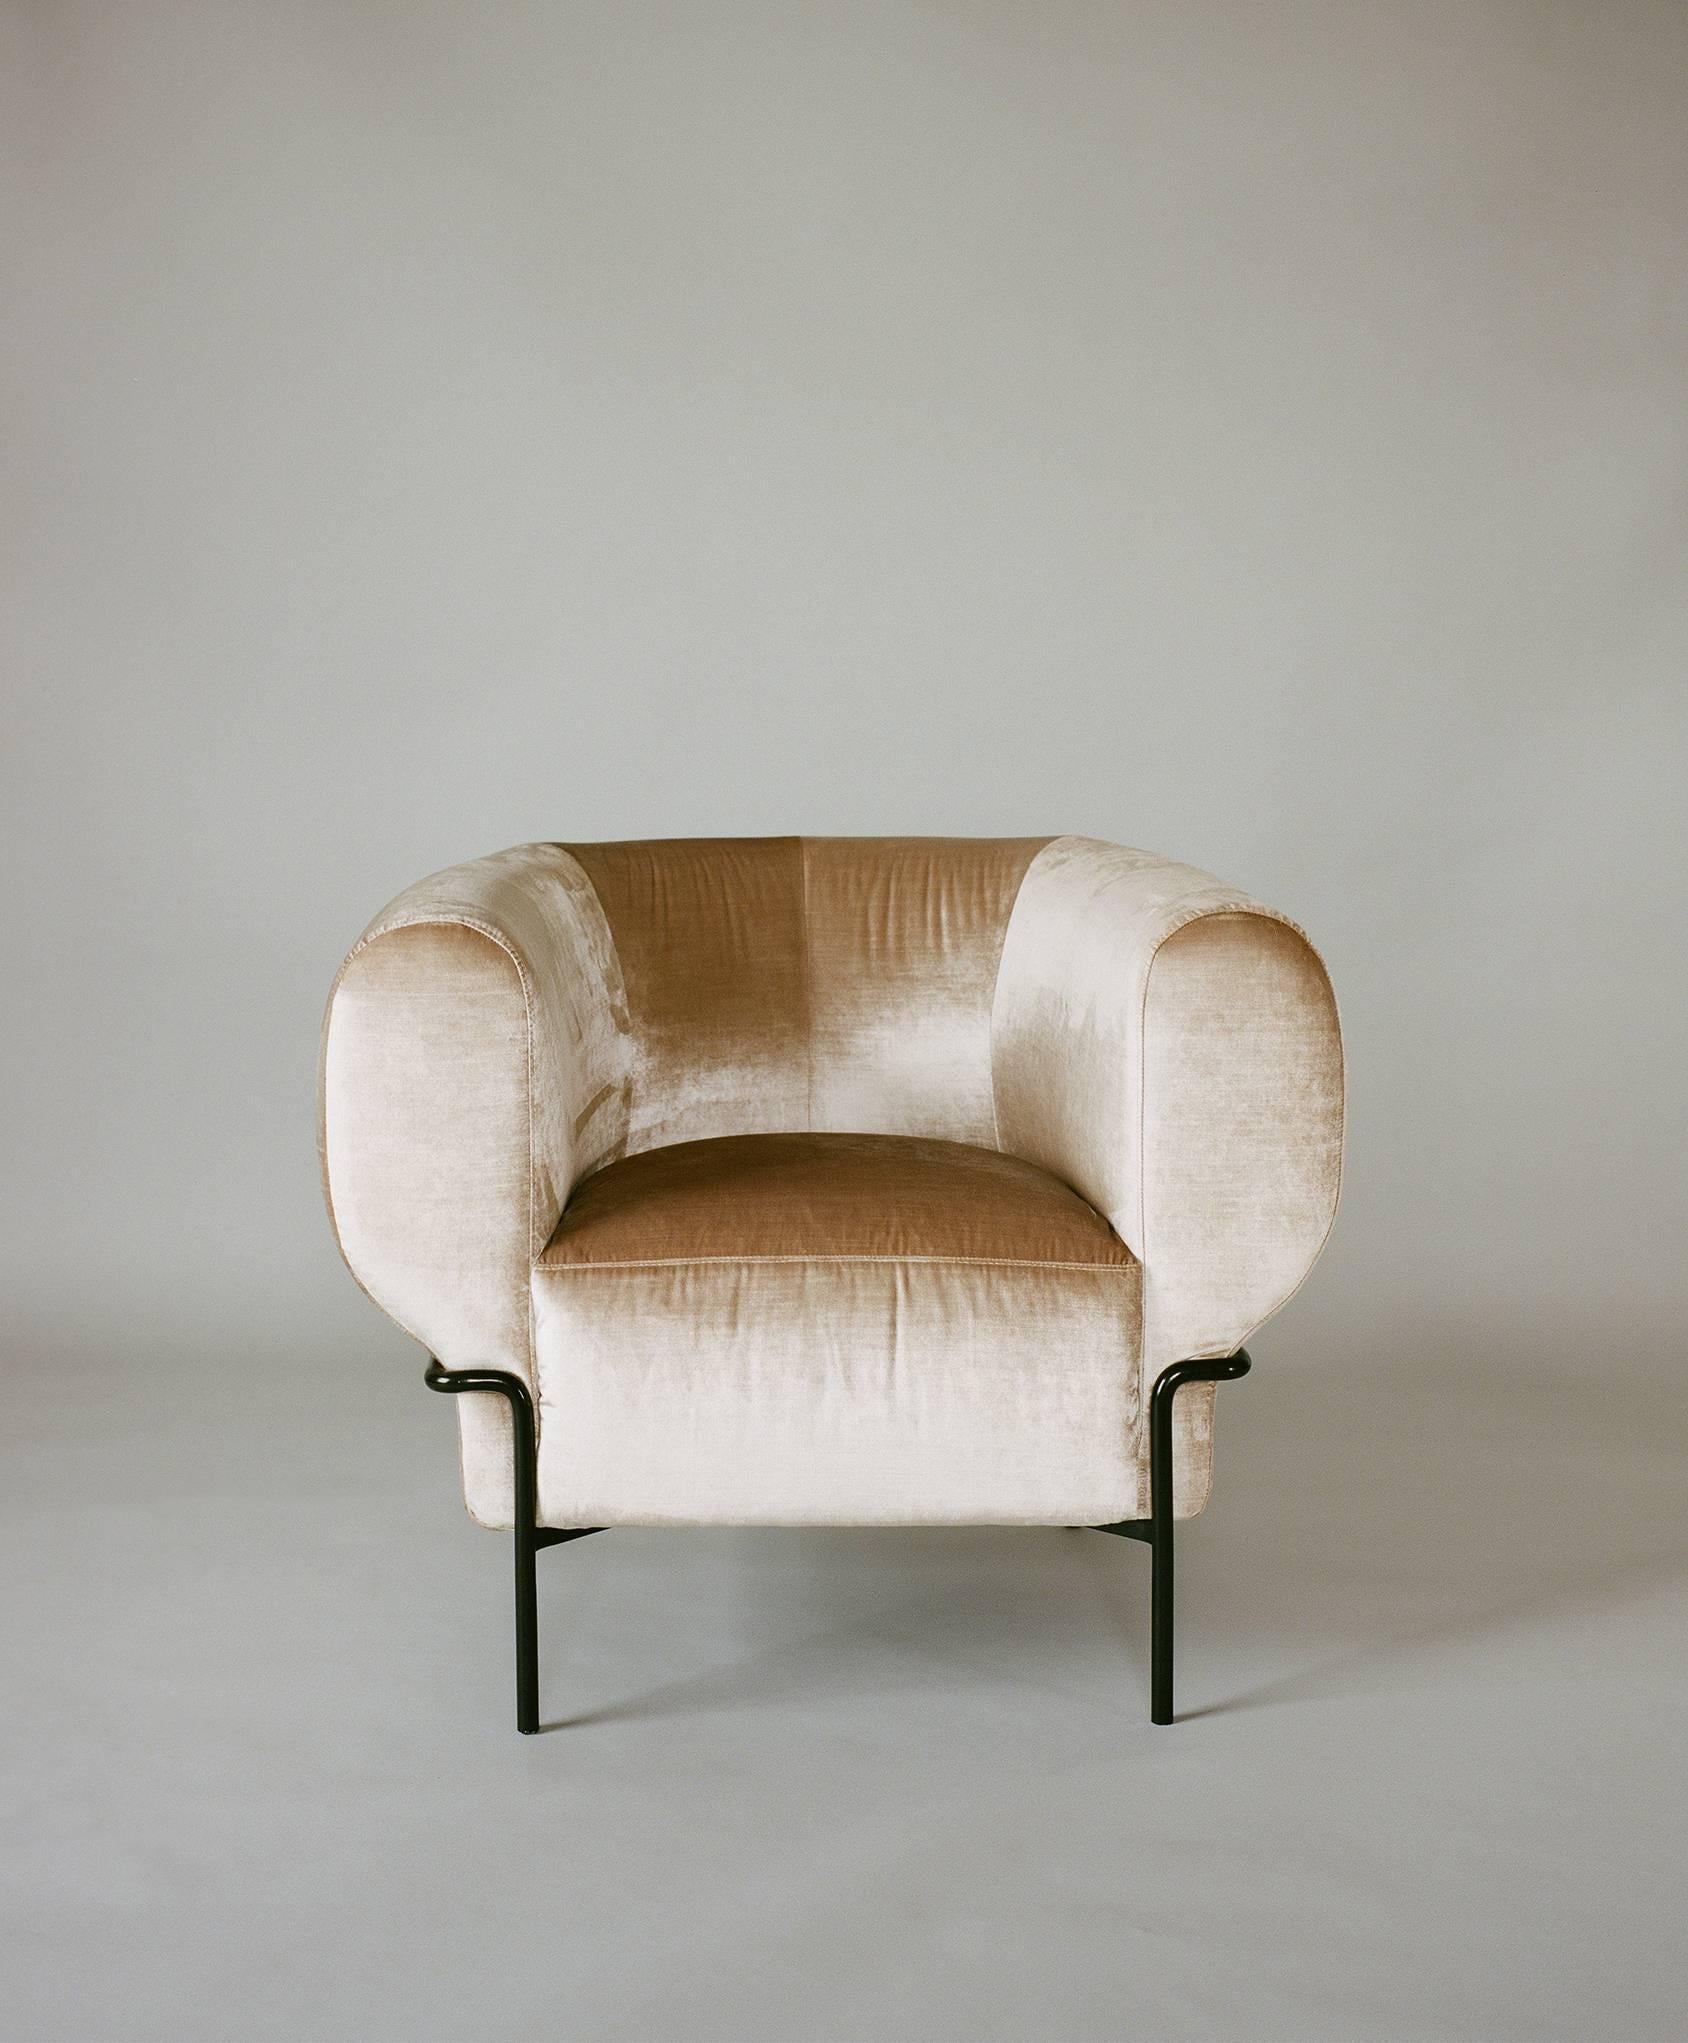 Der Madda ist eine moderne Interpretation des klassischen Clubsessels. Das Metallgestell umschließt den Stuhl vollständig, als ob es ihn in die obere, bequeme Sitzfläche zwängen würde. 

Erhältlich in einer Vielzahl von Materialien und Basen und